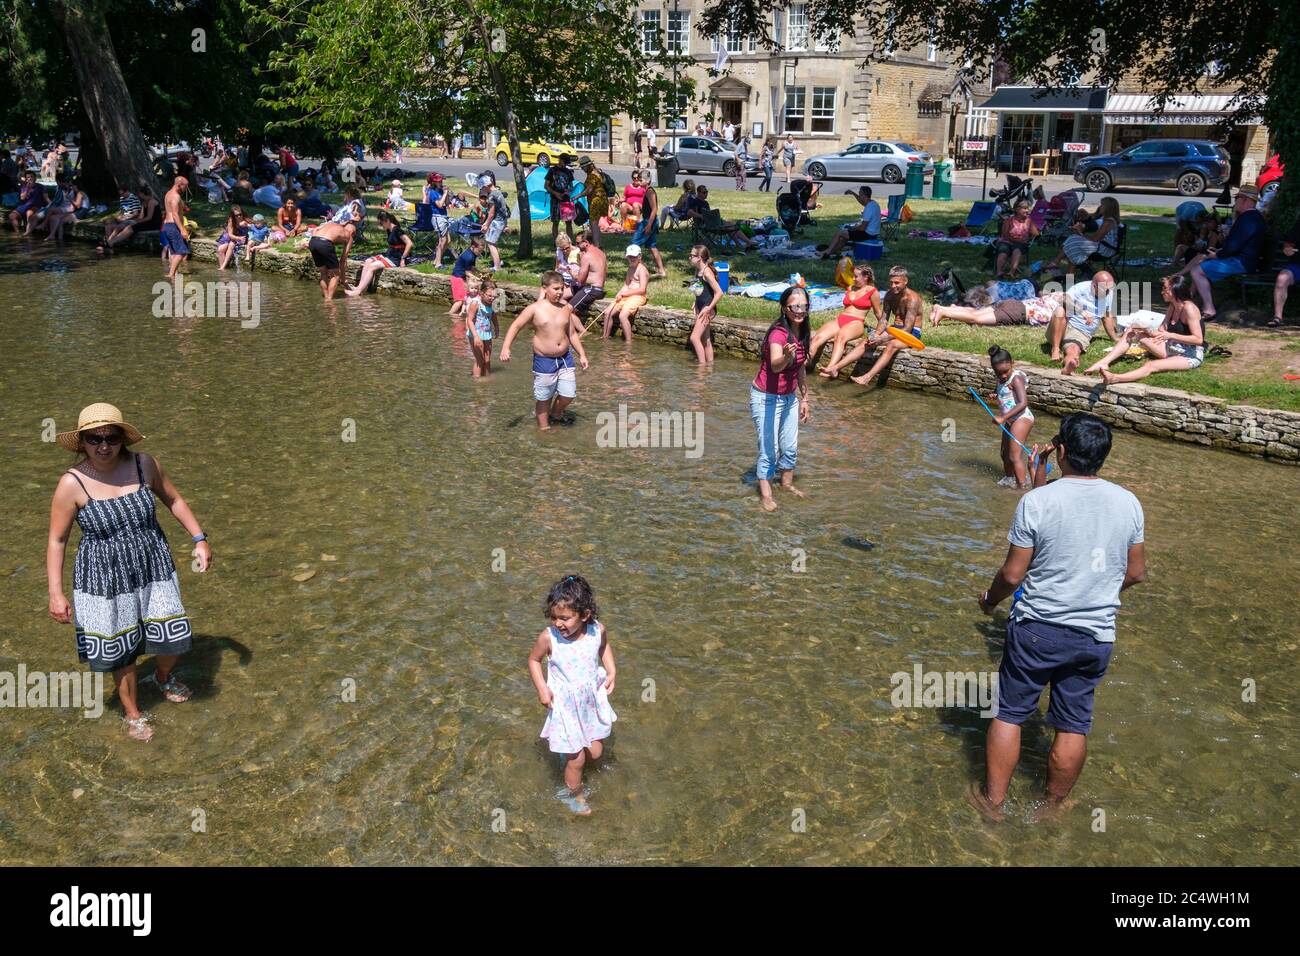 Bourton sur l'eau, Royaume-Uni. Les gens apprécient le soleil, pagayez dans la rivière Windrush et détendez-vous à l'ombre tandis que le bon temps continue amène les gens dehors avec l'assouplissement des restrictions de verrouillage dues à Covid-19 en 2020. Banque D'Images